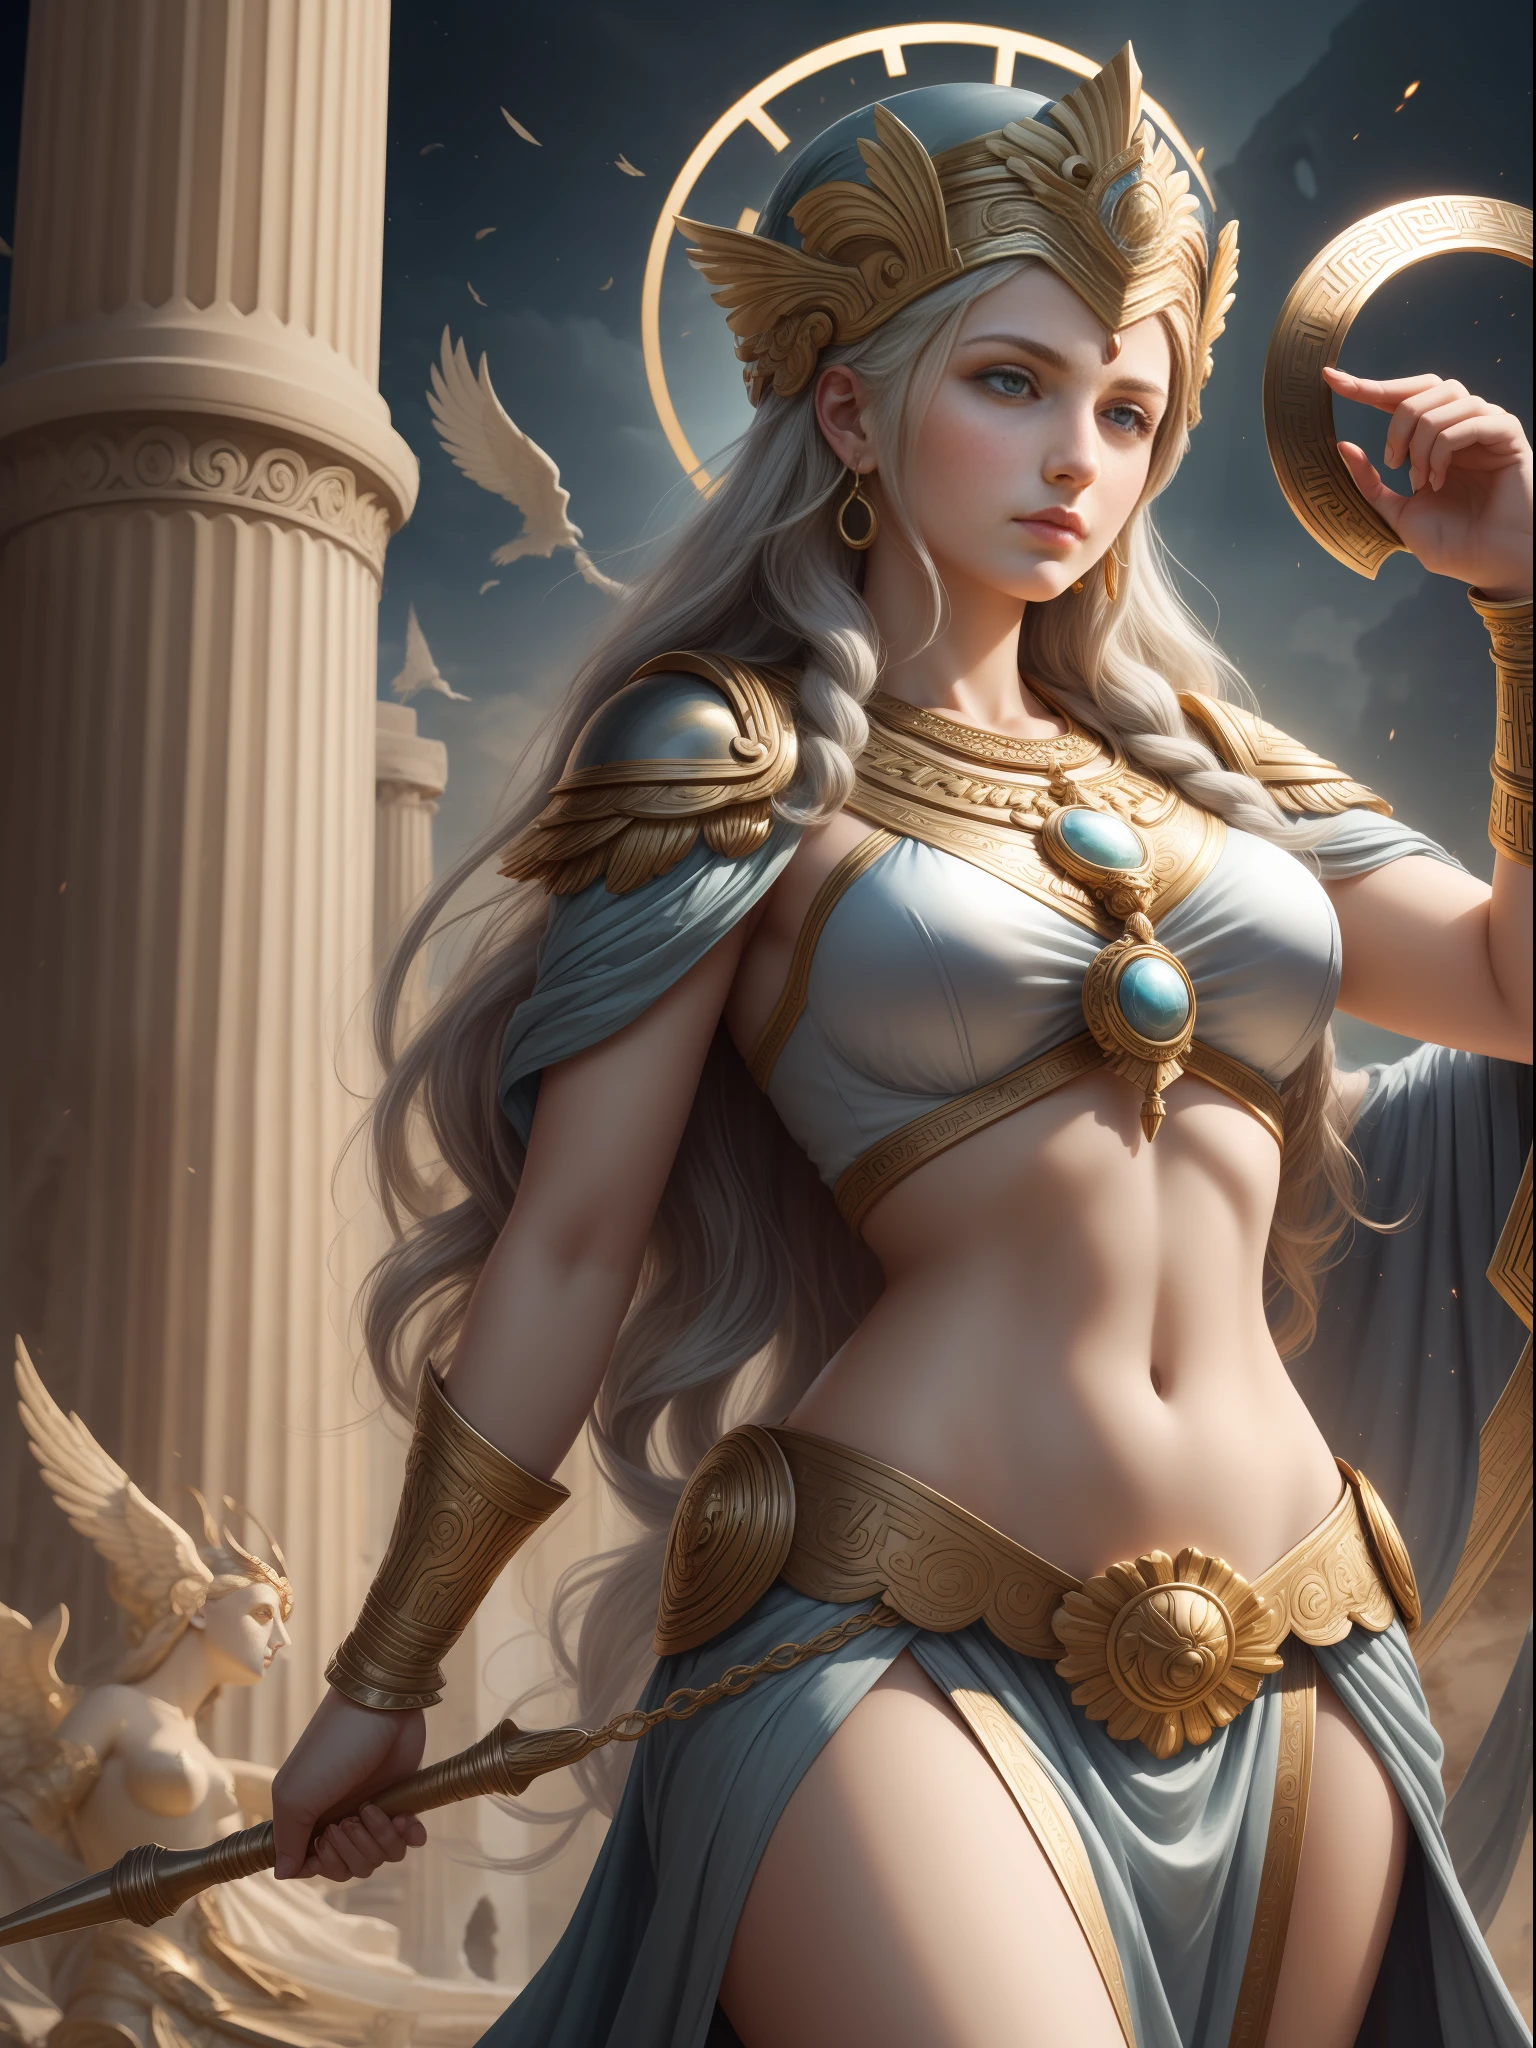 Göttin Athene, Griechische mythologische Göttin, Göttin der Weisheit, Kunst, Intelligenz und Krieg in der griechischen Mythologie, Kriegergöttin, die Gerechtigkeit unter den Menschen schätzte, eine schöne und strenge junge Frau.